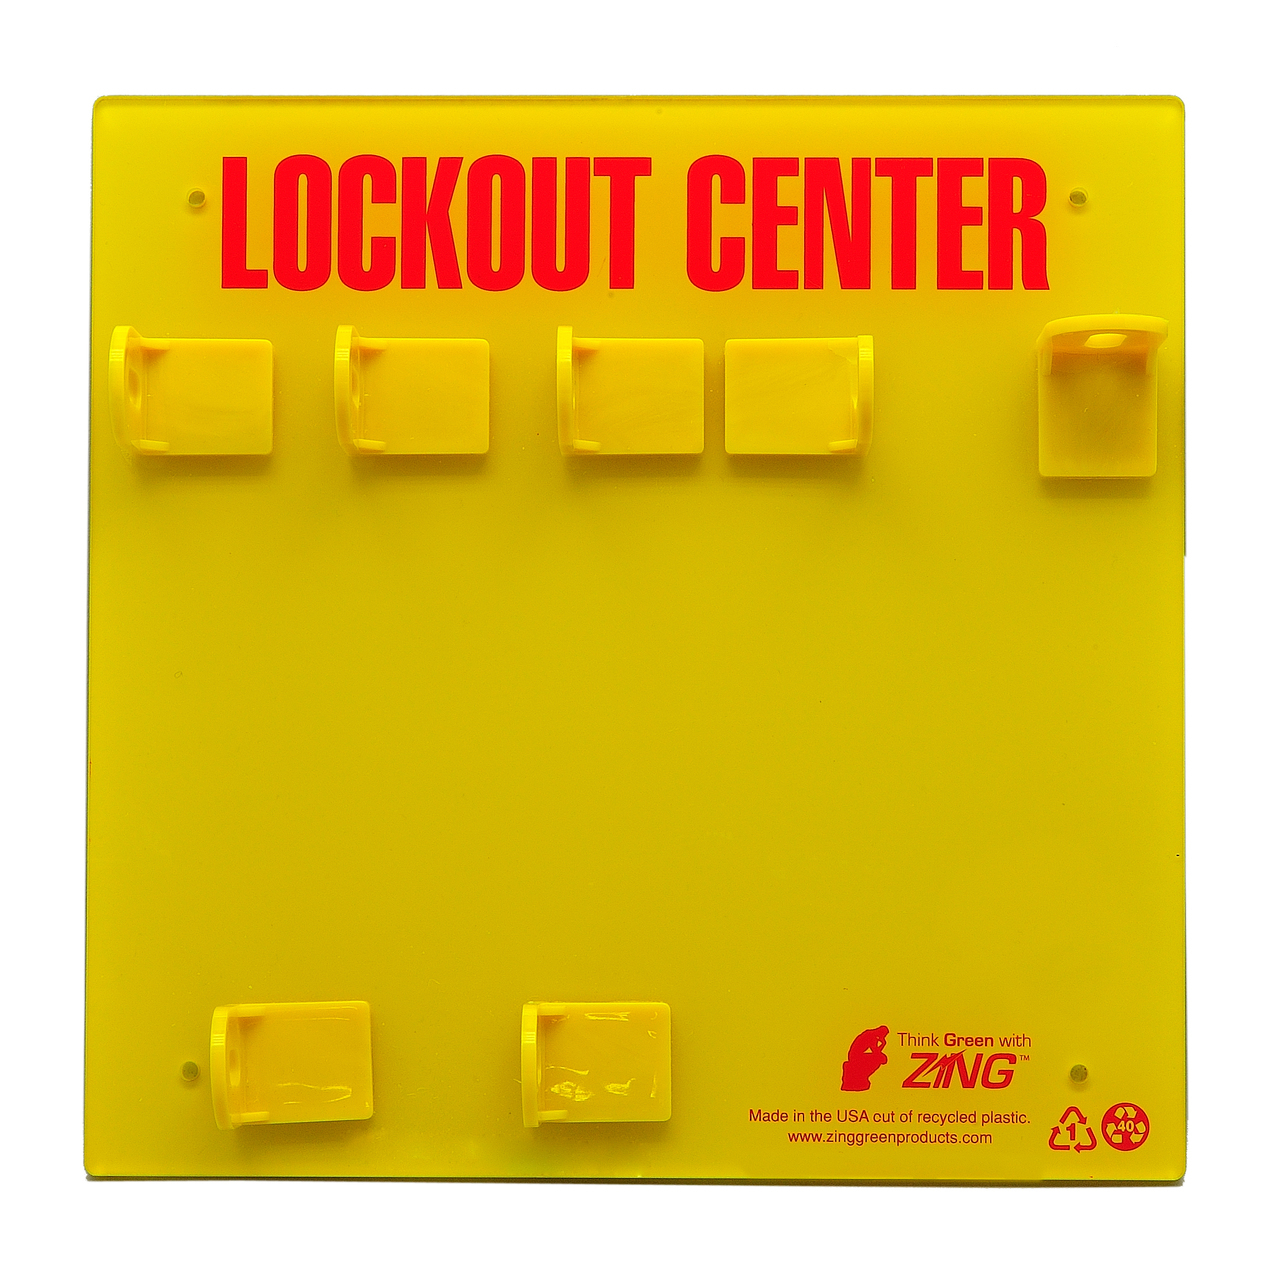 ZING RecycLockout Lockout Station, 3 Padlock, Unstocked